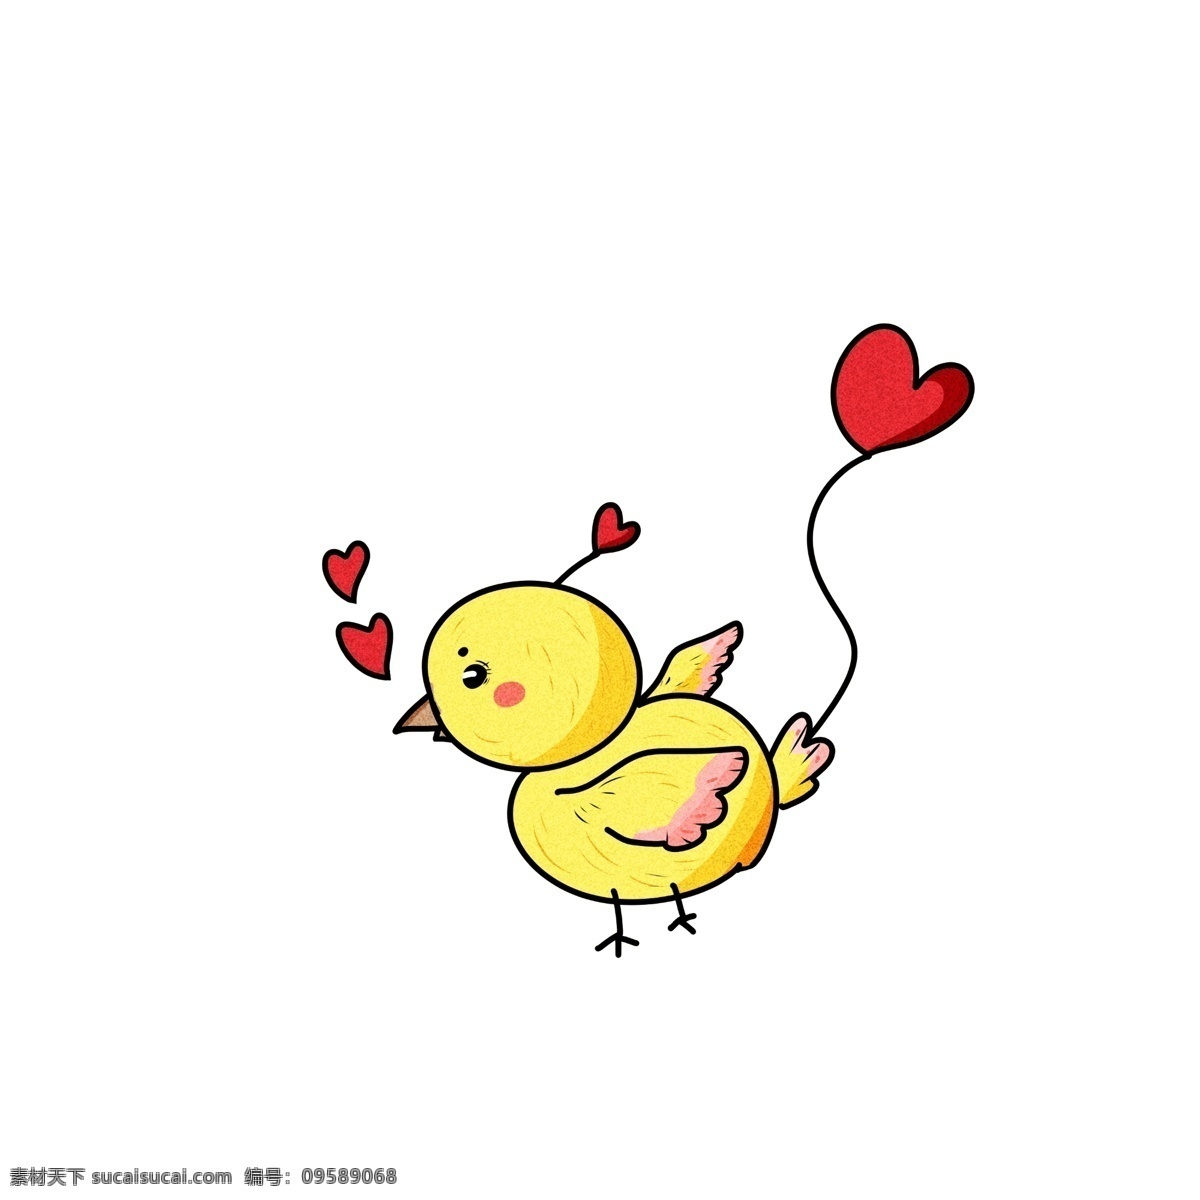 黄色 爱情 鸭子 插画 红色的桃心 漂亮 可爱 手绘爱情鸭子 萌